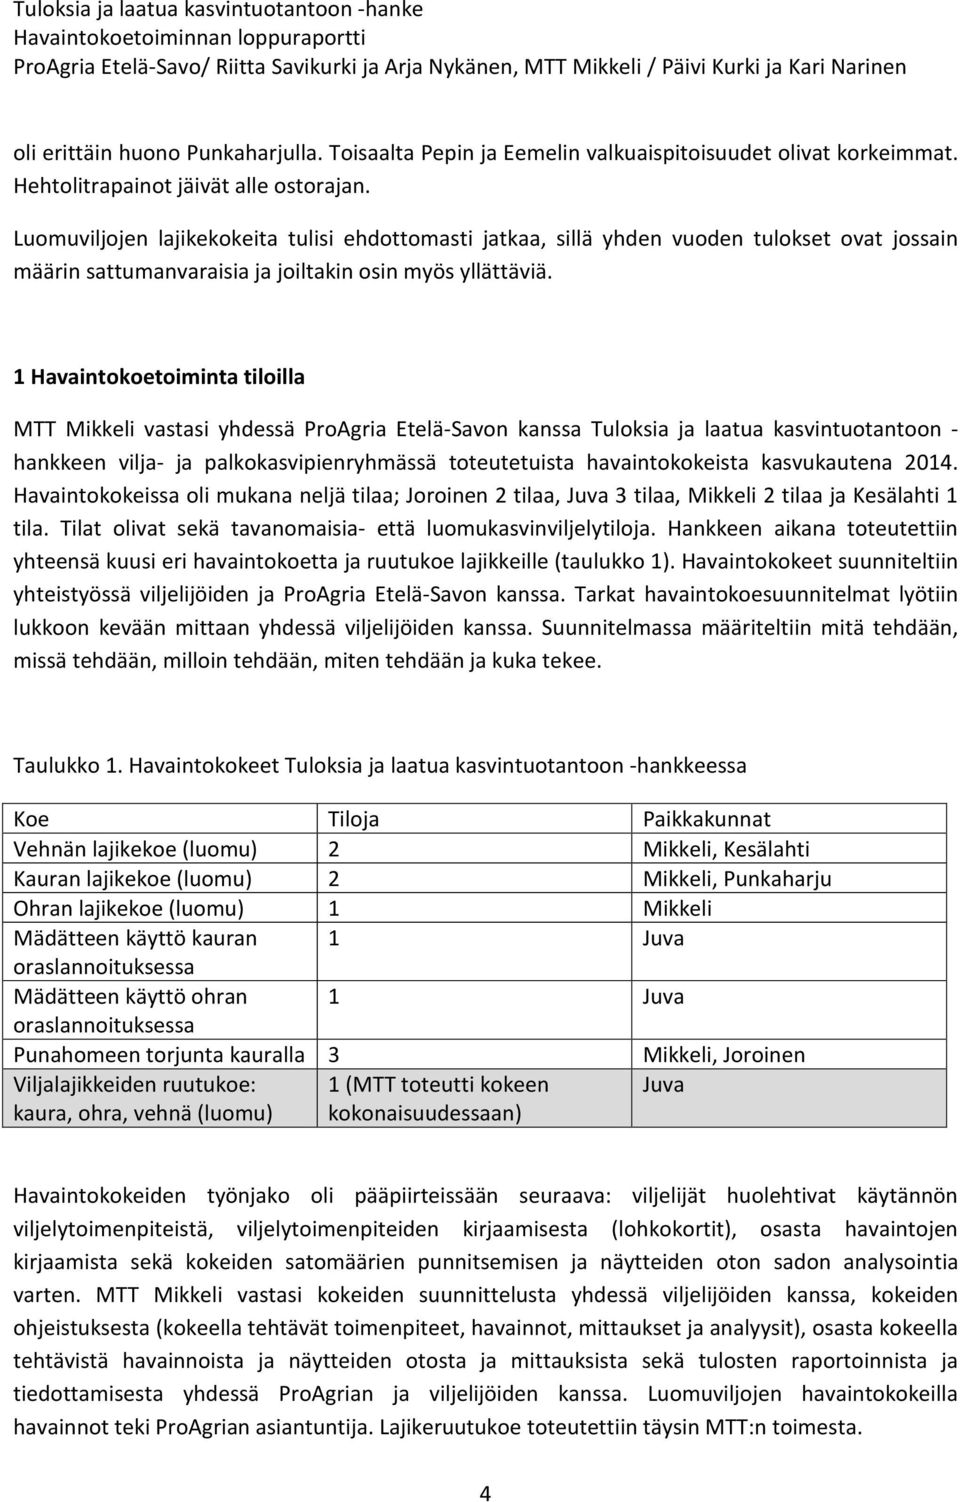 1 Havaintokoetoiminta tiloilla MTT Mikkeli vastasi yhdessä ProAgria Etelä-Savon kanssa Tuloksia ja laatua kasvintuotantoon - hankkeen vilja- ja palkokasvipienryhmässä toteutetuista havaintokokeista